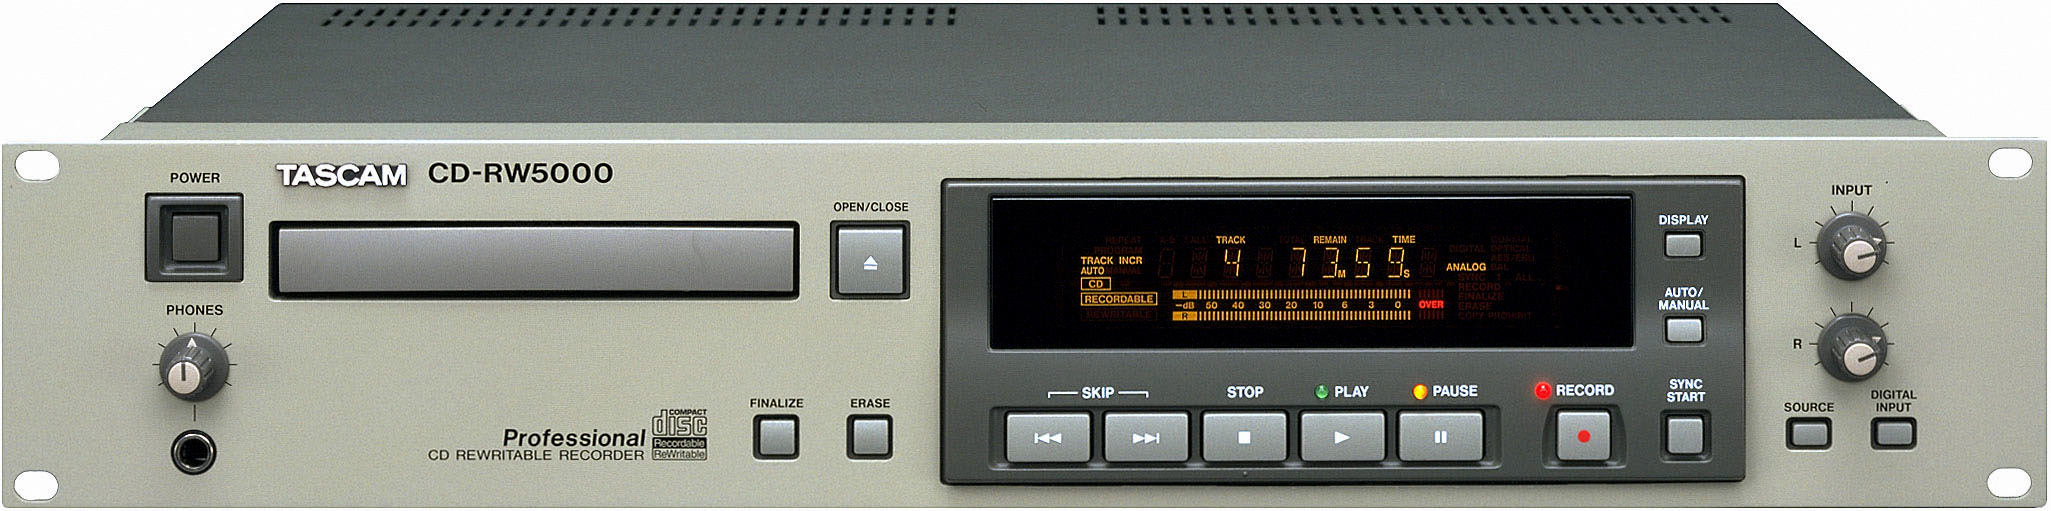 Tascam CD-RW 5000-Prospekt-1.jpg